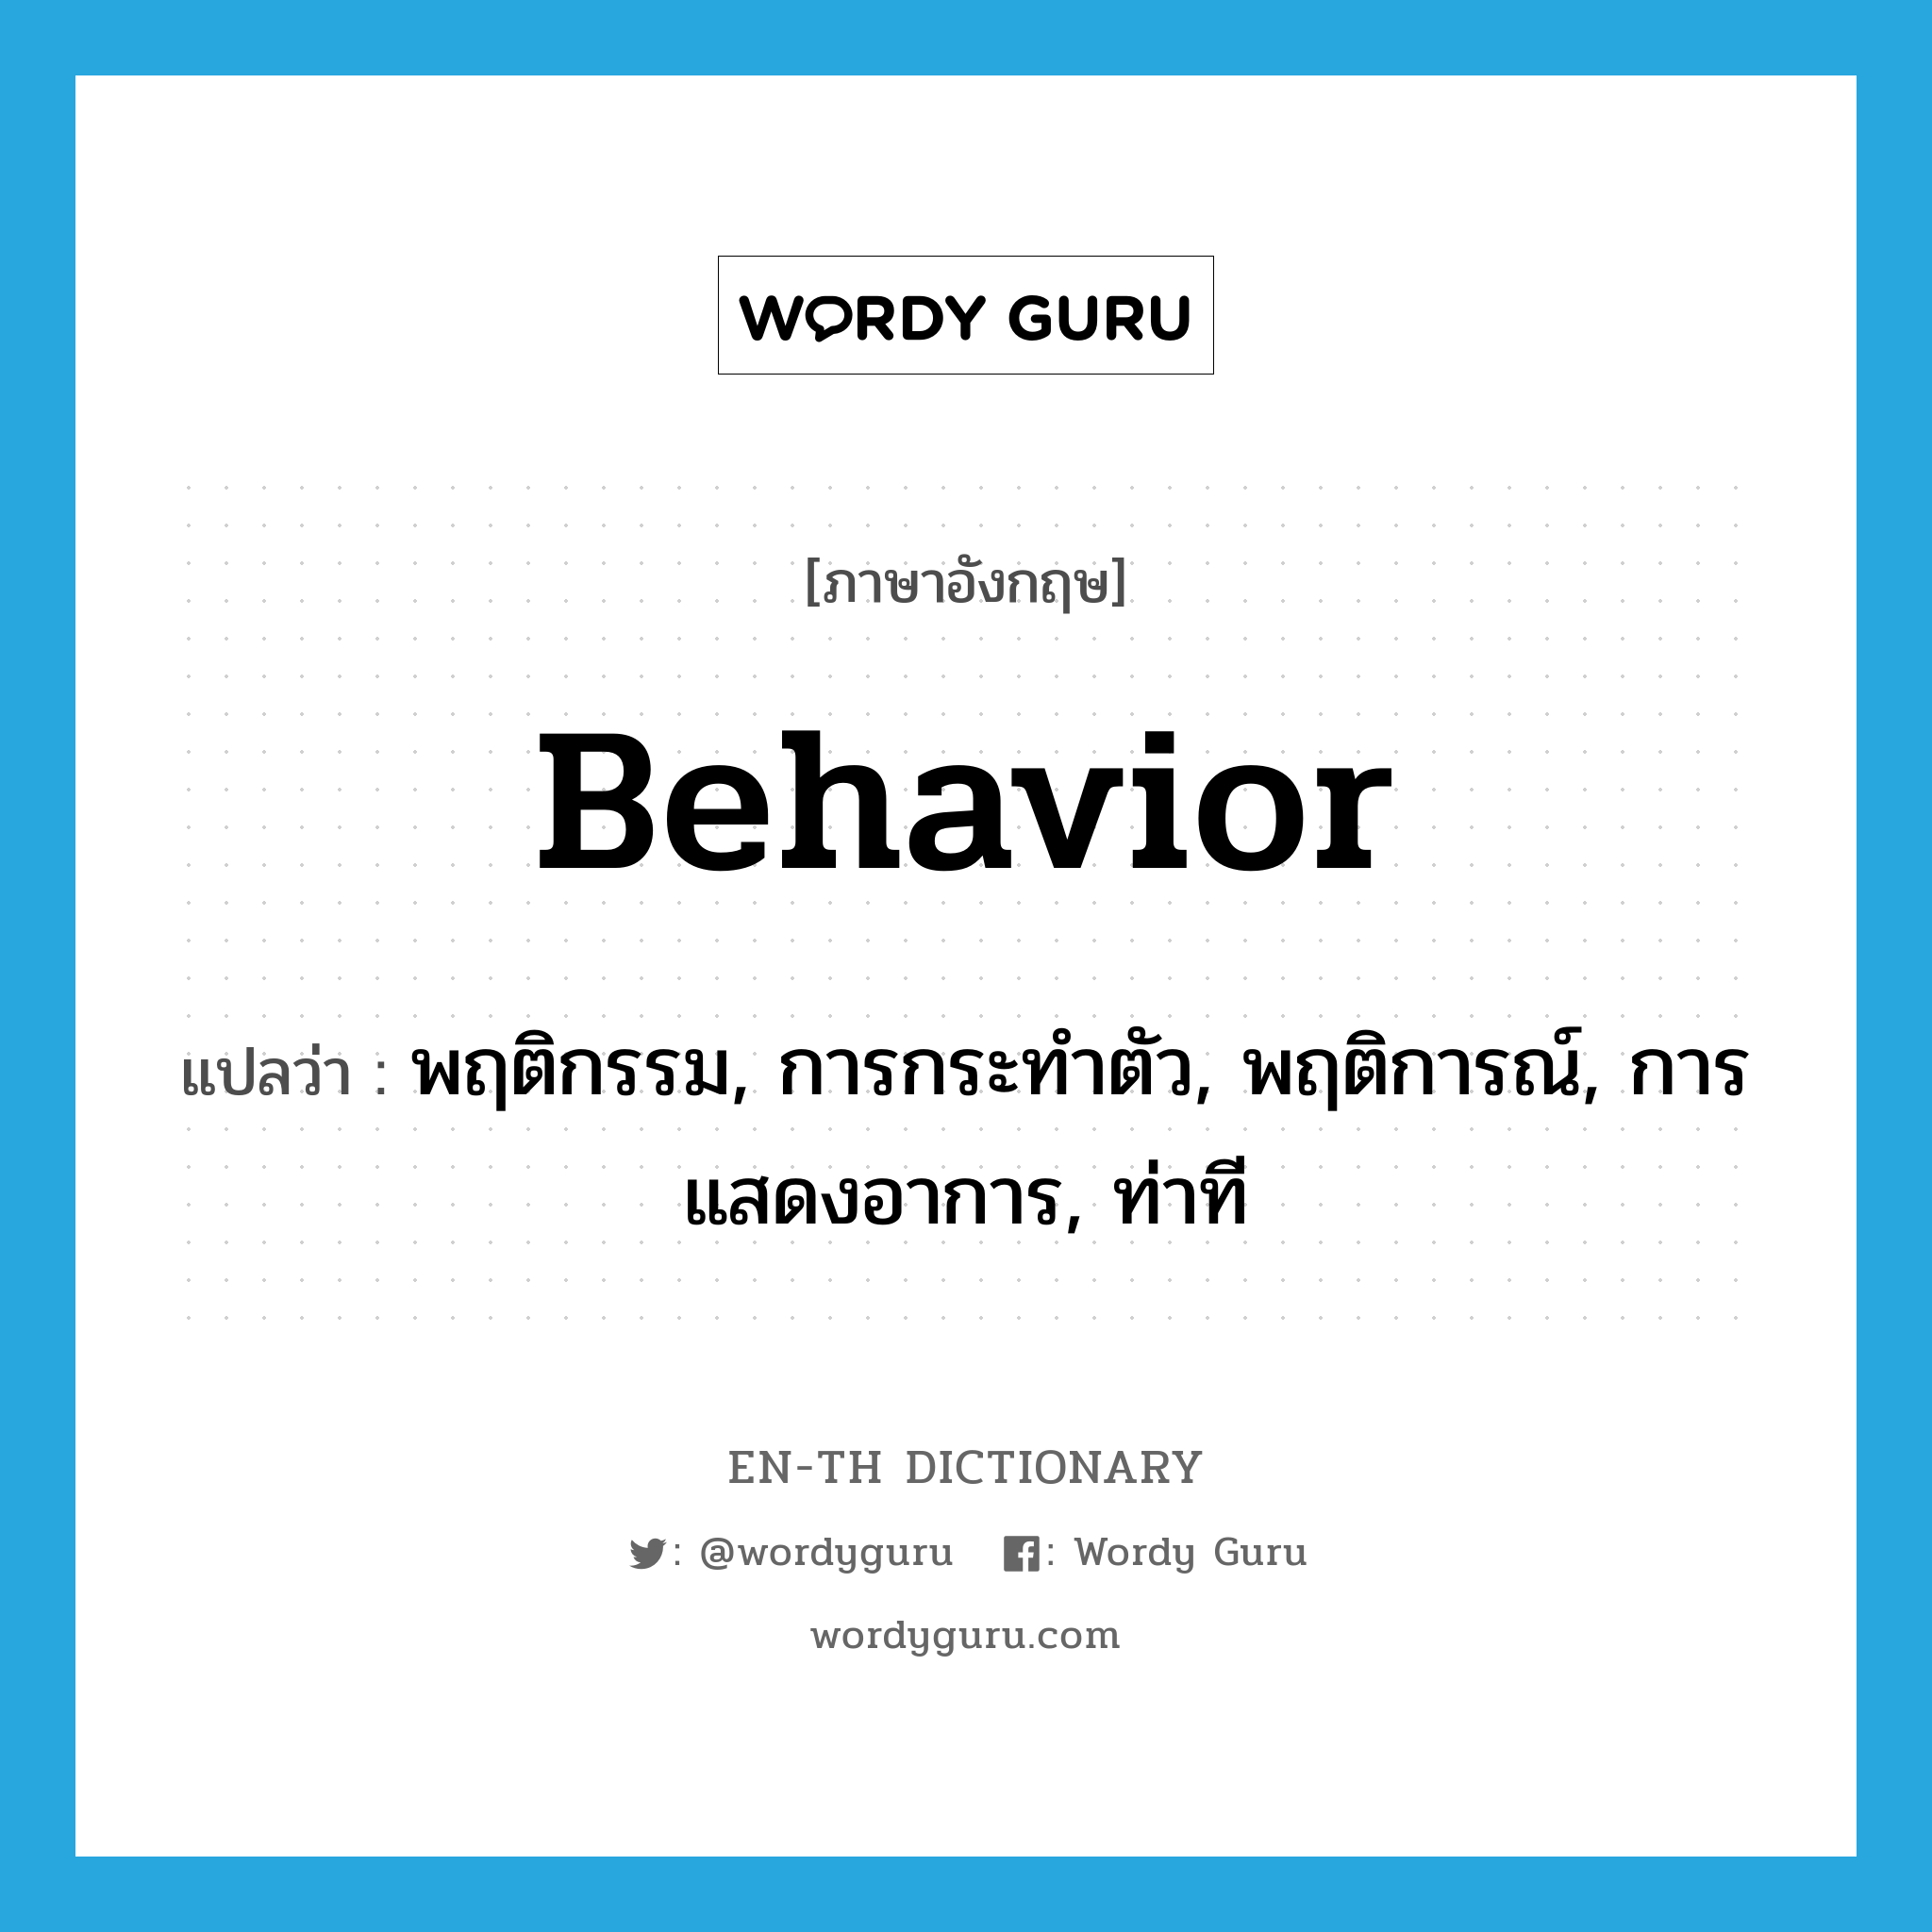 พฤติกรรม, การกระทำตัว, พฤติการณ์, การแสดงอาการ, ท่าที ภาษาอังกฤษ?, คำศัพท์ภาษาอังกฤษ พฤติกรรม, การกระทำตัว, พฤติการณ์, การแสดงอาการ, ท่าที แปลว่า behavior ประเภท N หมวด N